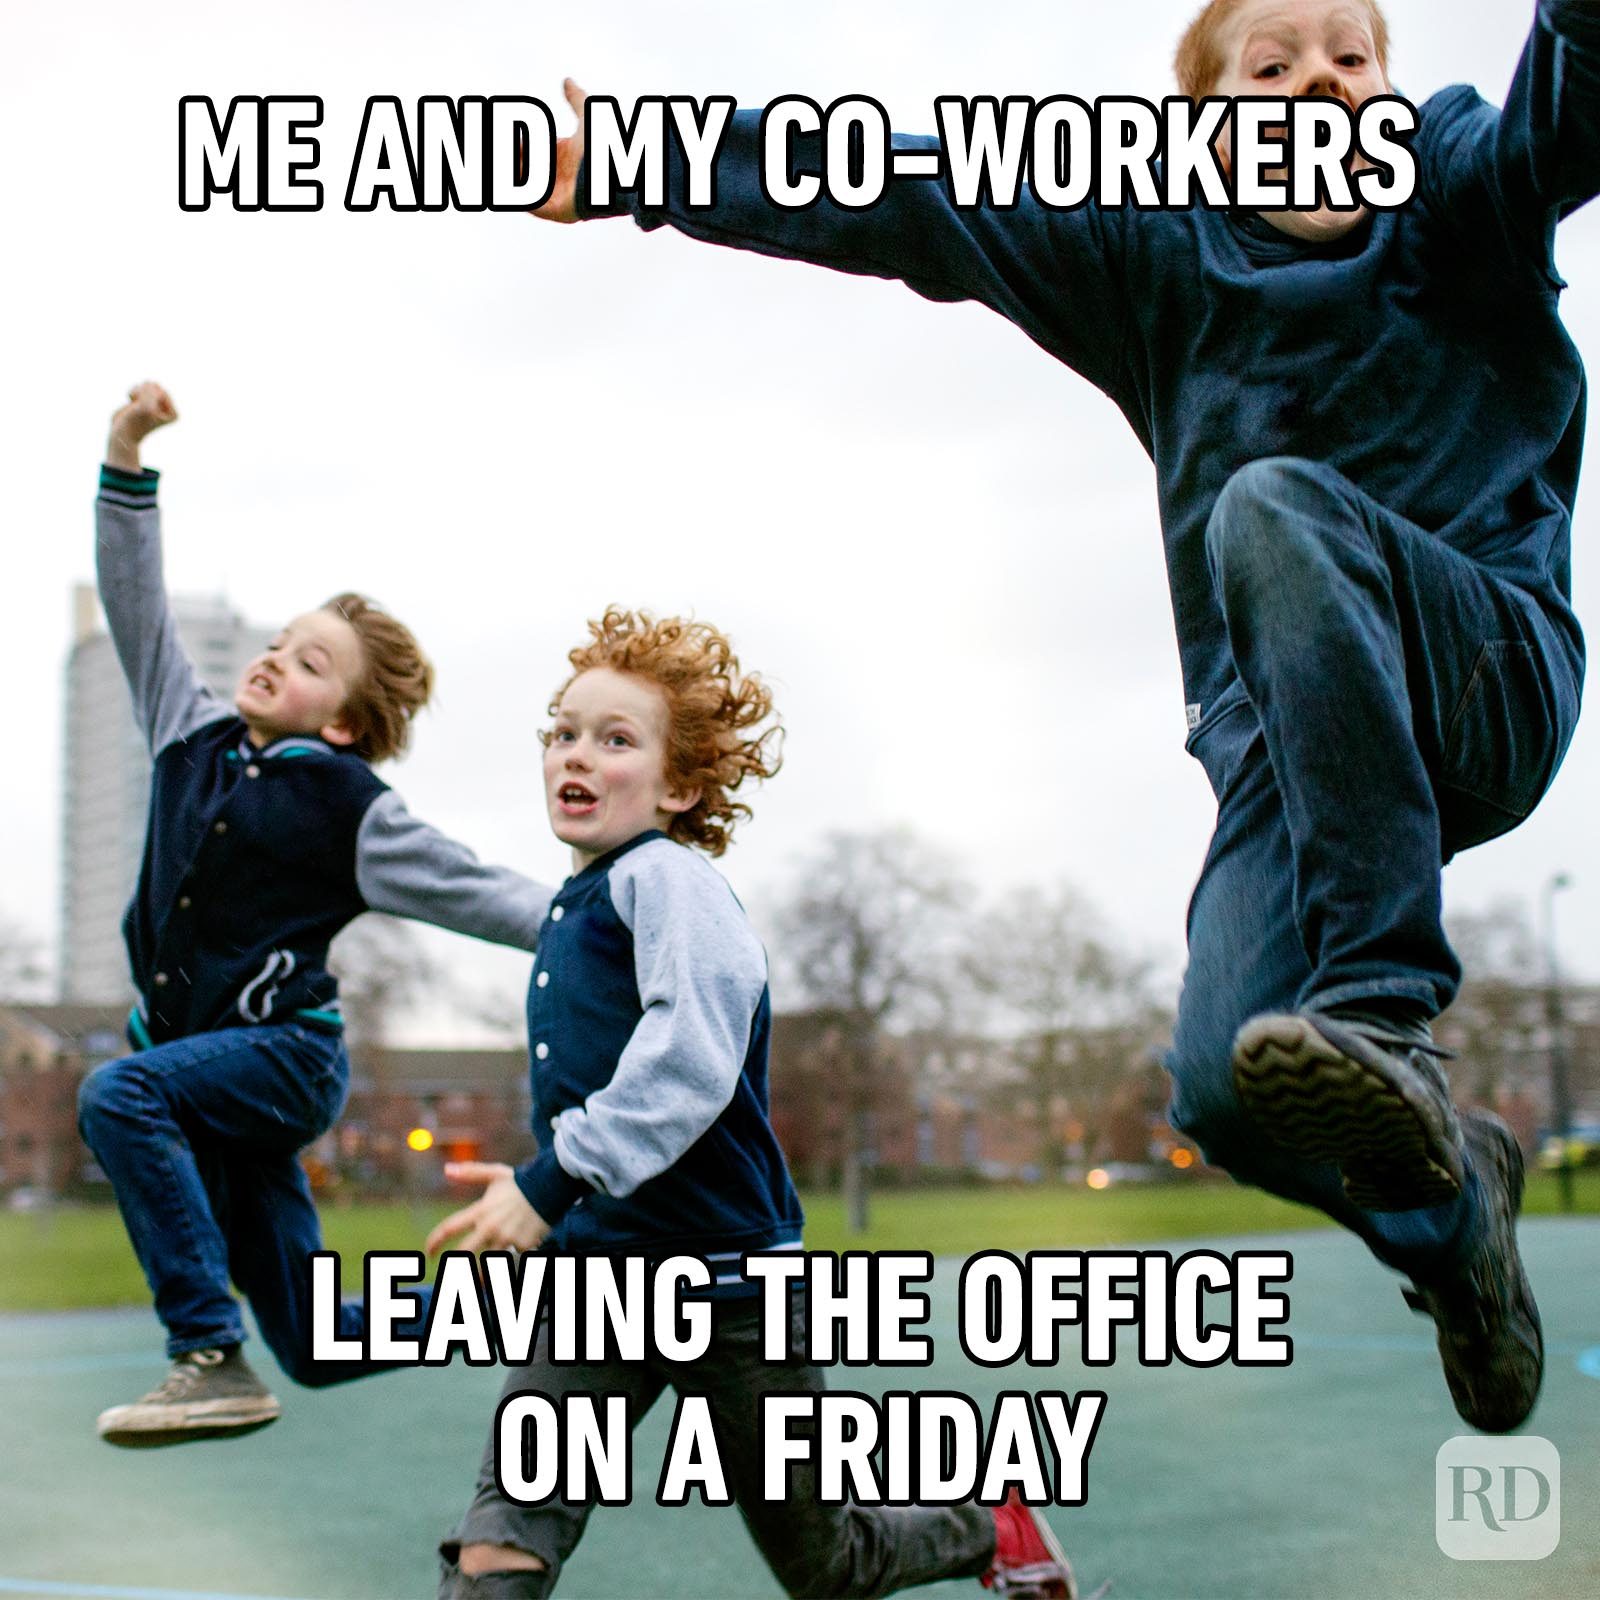 Friday Work Meme